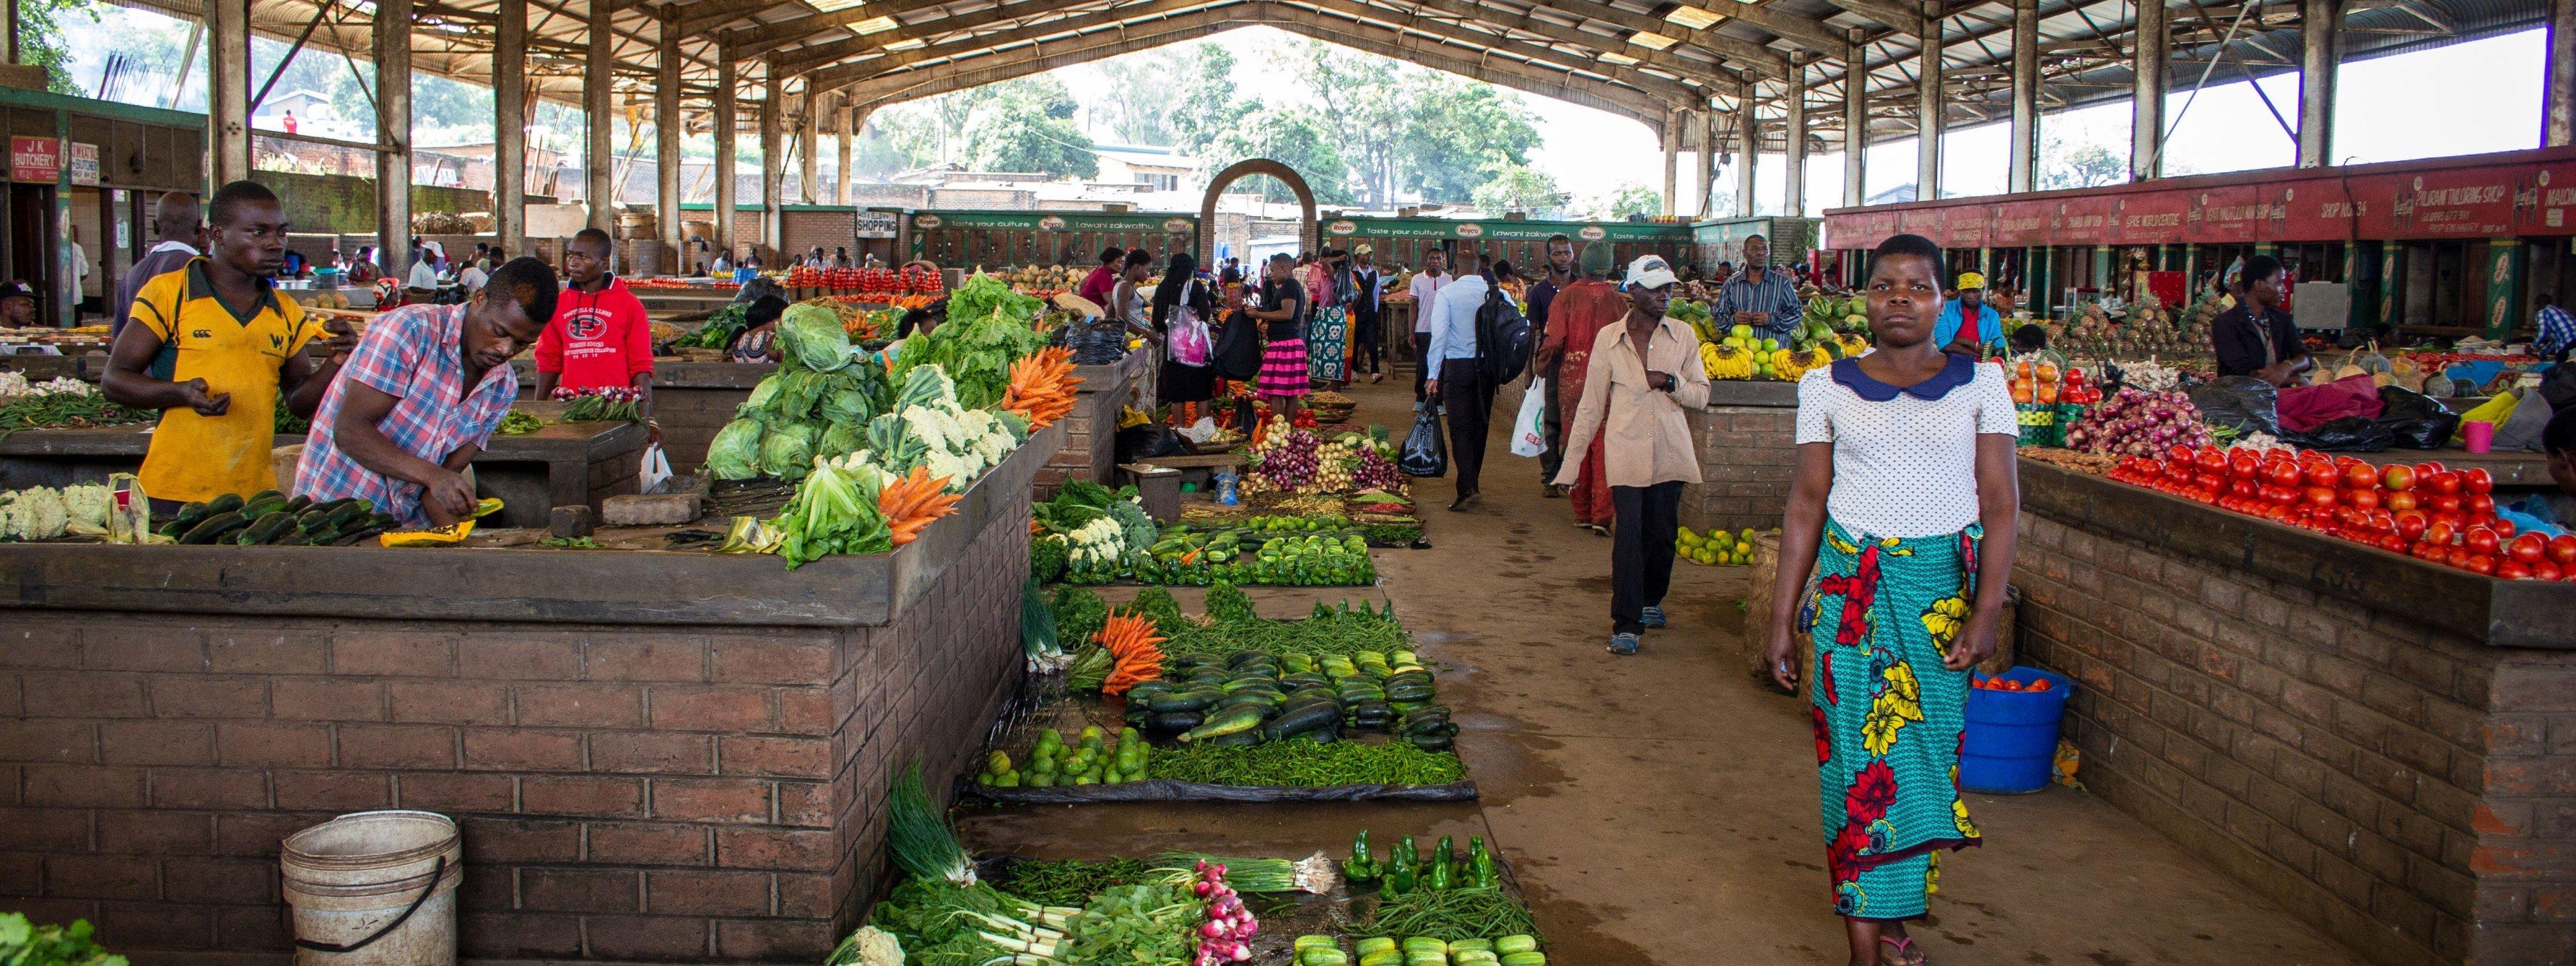 Die Markthalle in Blantyre in Malawi mit einem reichen Angebot an Obst und Gemüse